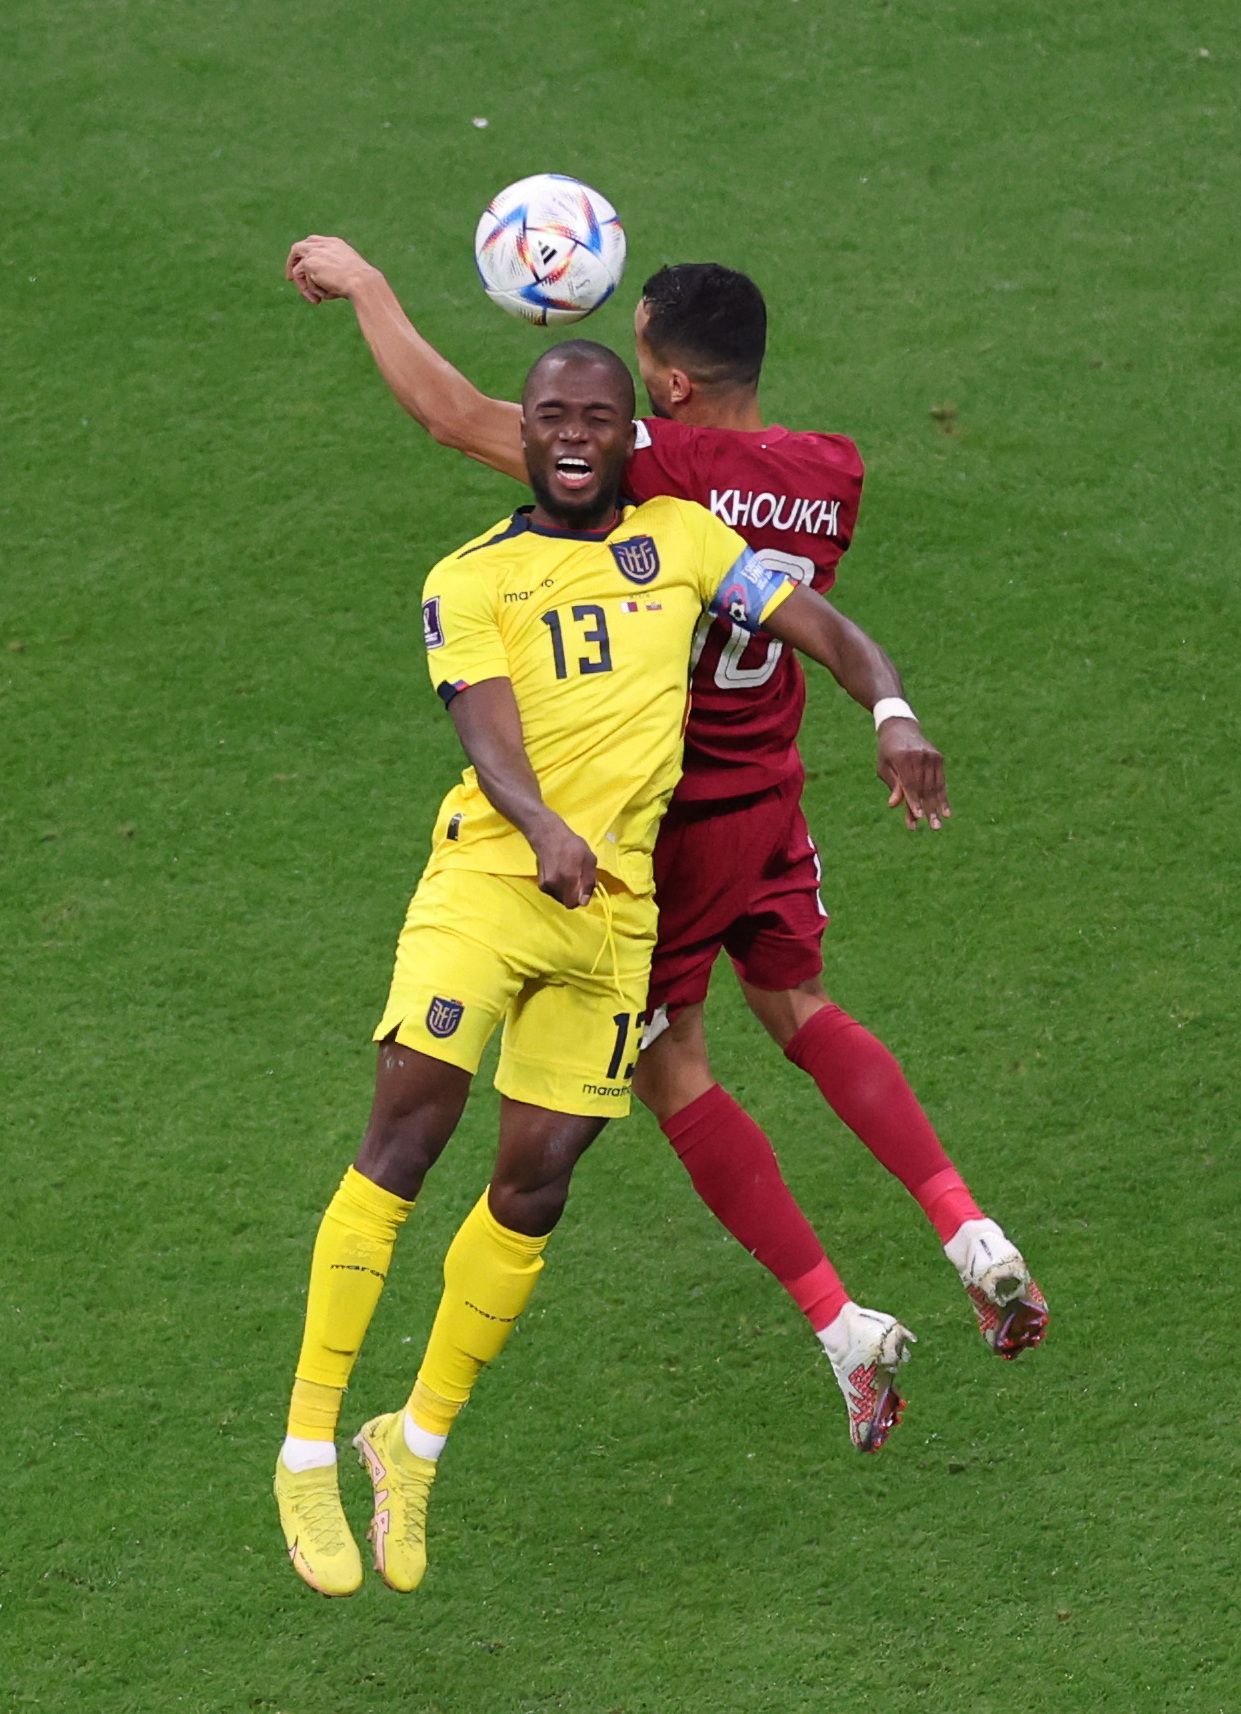 Enner Valencia a Búalim Chúchí v zápase MS 2022 Katar - Ekvádor